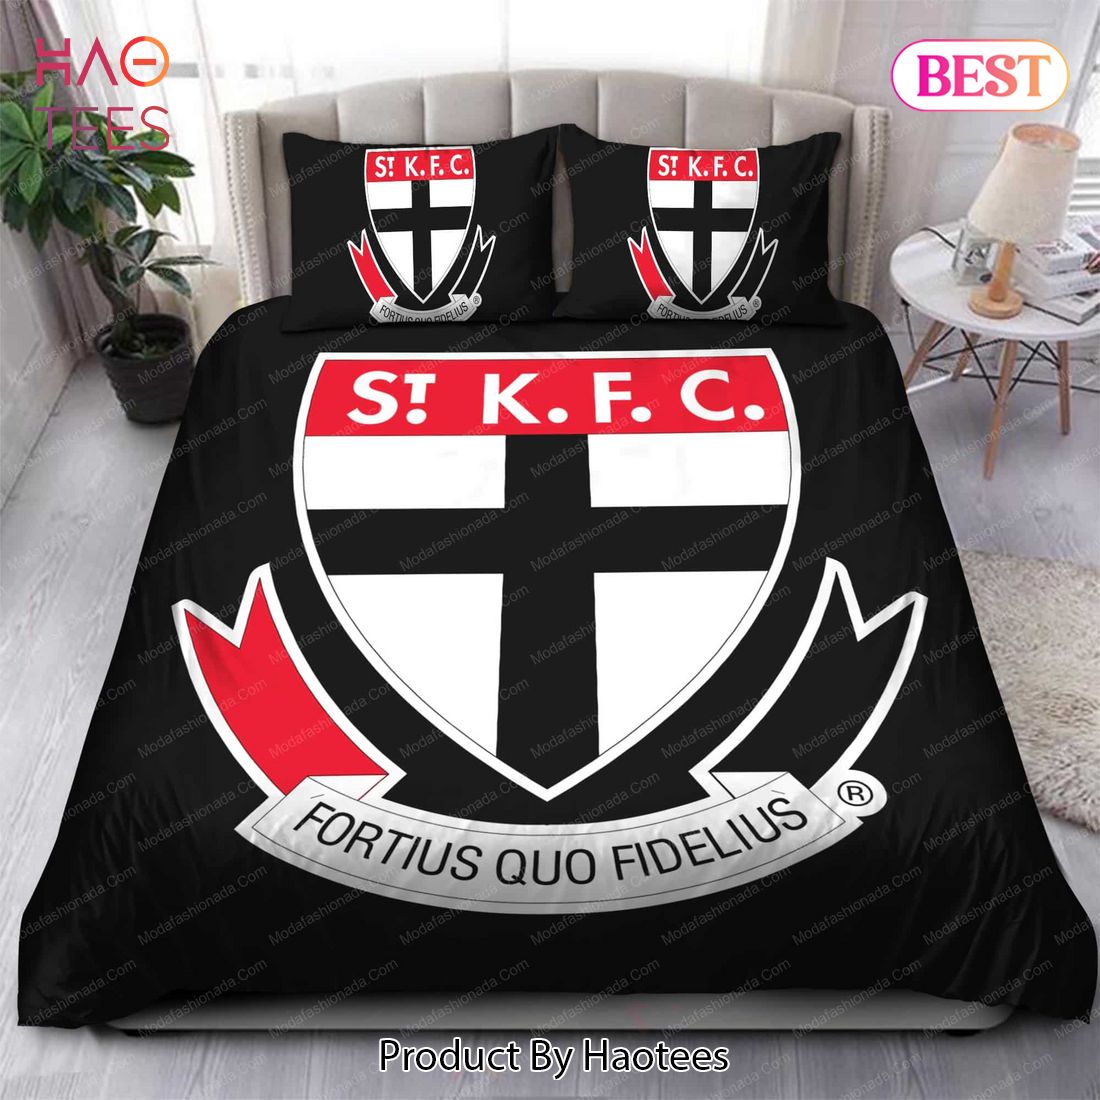 Buy St Kilda Football Club Logo Bedding Sets Bed Sets, Bedroom Sets, Comforter Sets, Duvet Cover, Bedspread